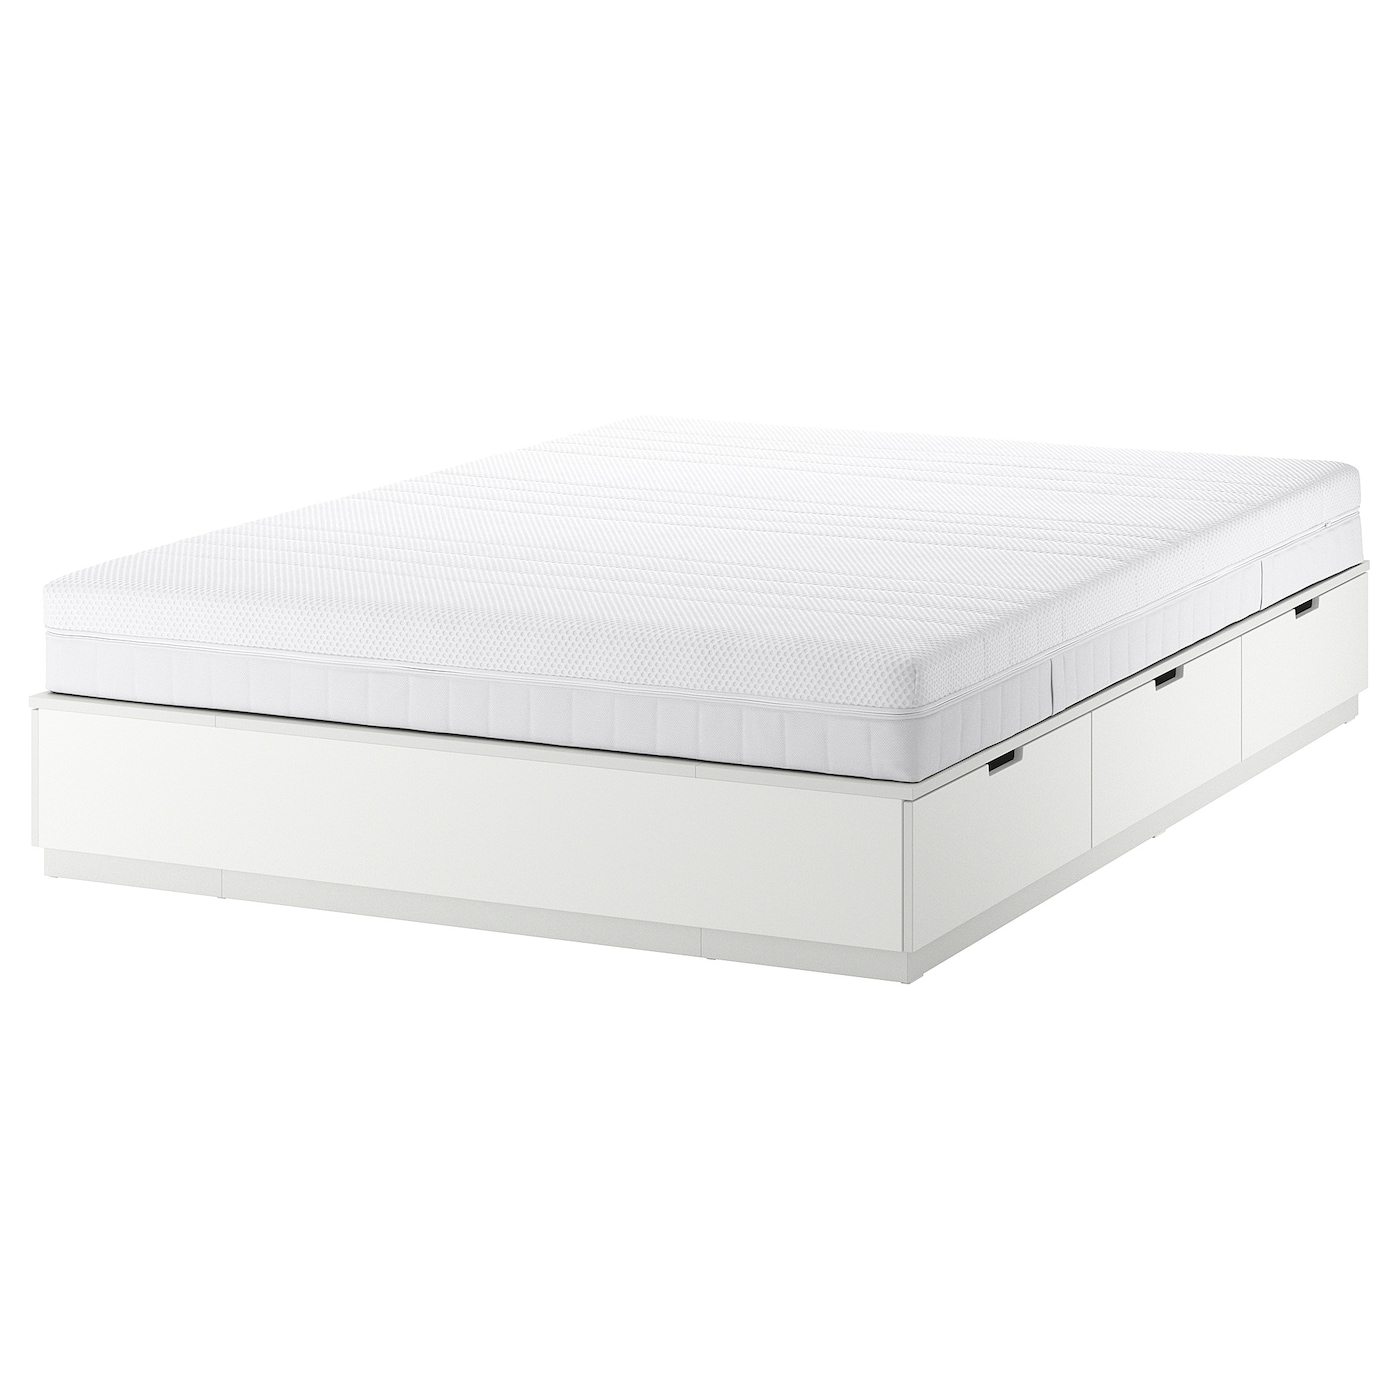 Каркас кровати с ящиком для хранения и матрасом - IKEA NORDLI, 200х140 см, матрас средне-жесткий, белый, НОРДЛИ ИКЕА